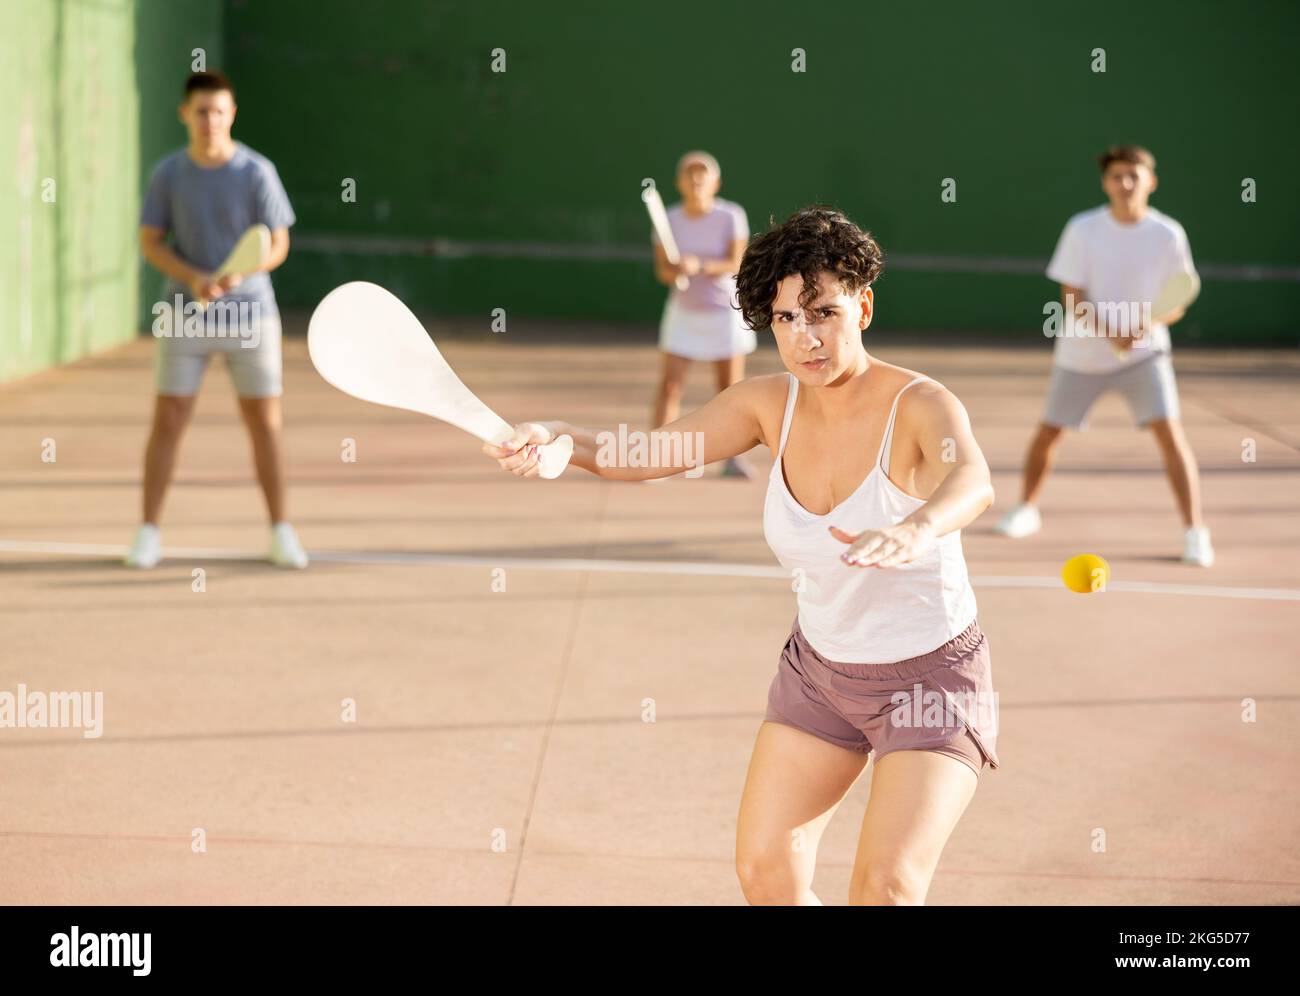 Femme basque pelote joueur frapper balle avec raquette en bois Banque D'Images